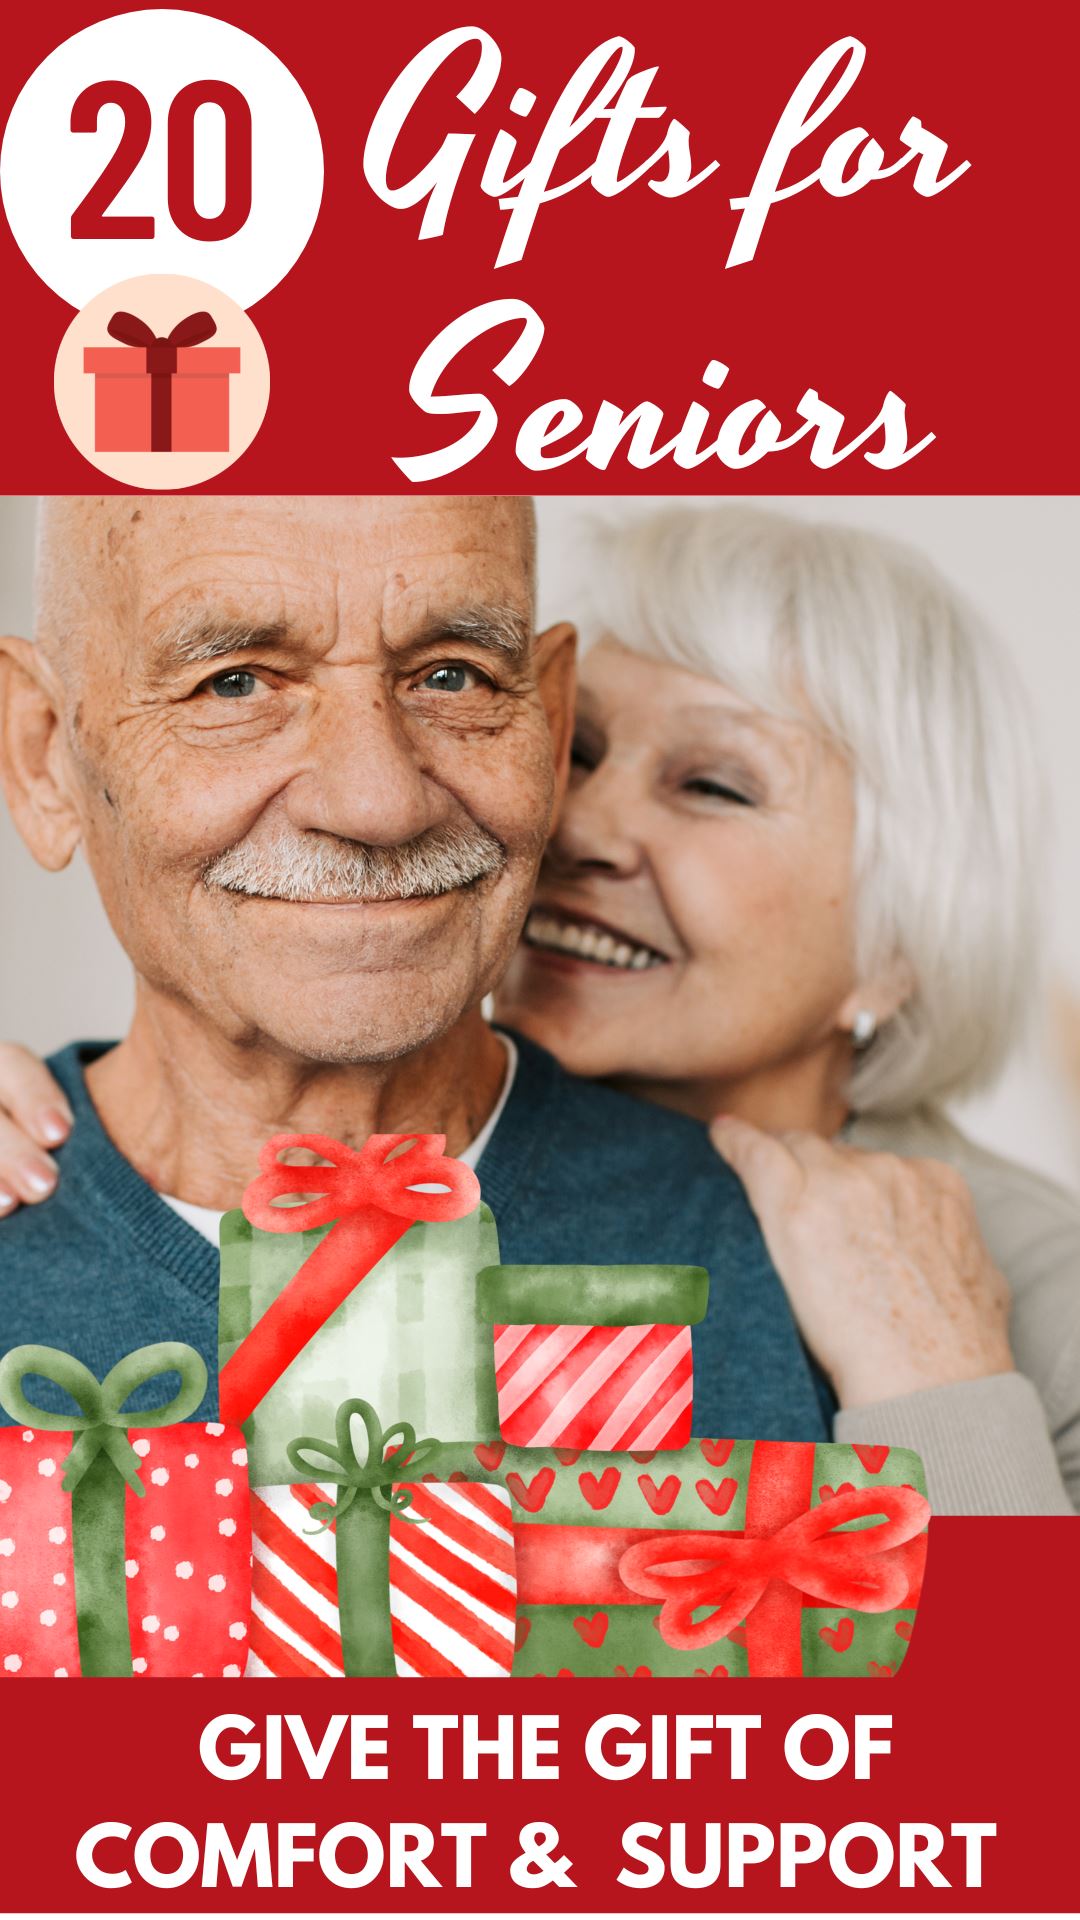 http://www.easyposturebrands.com/cdn/shop/articles/gifts_for_the_elderly.jpg?v=1667840723